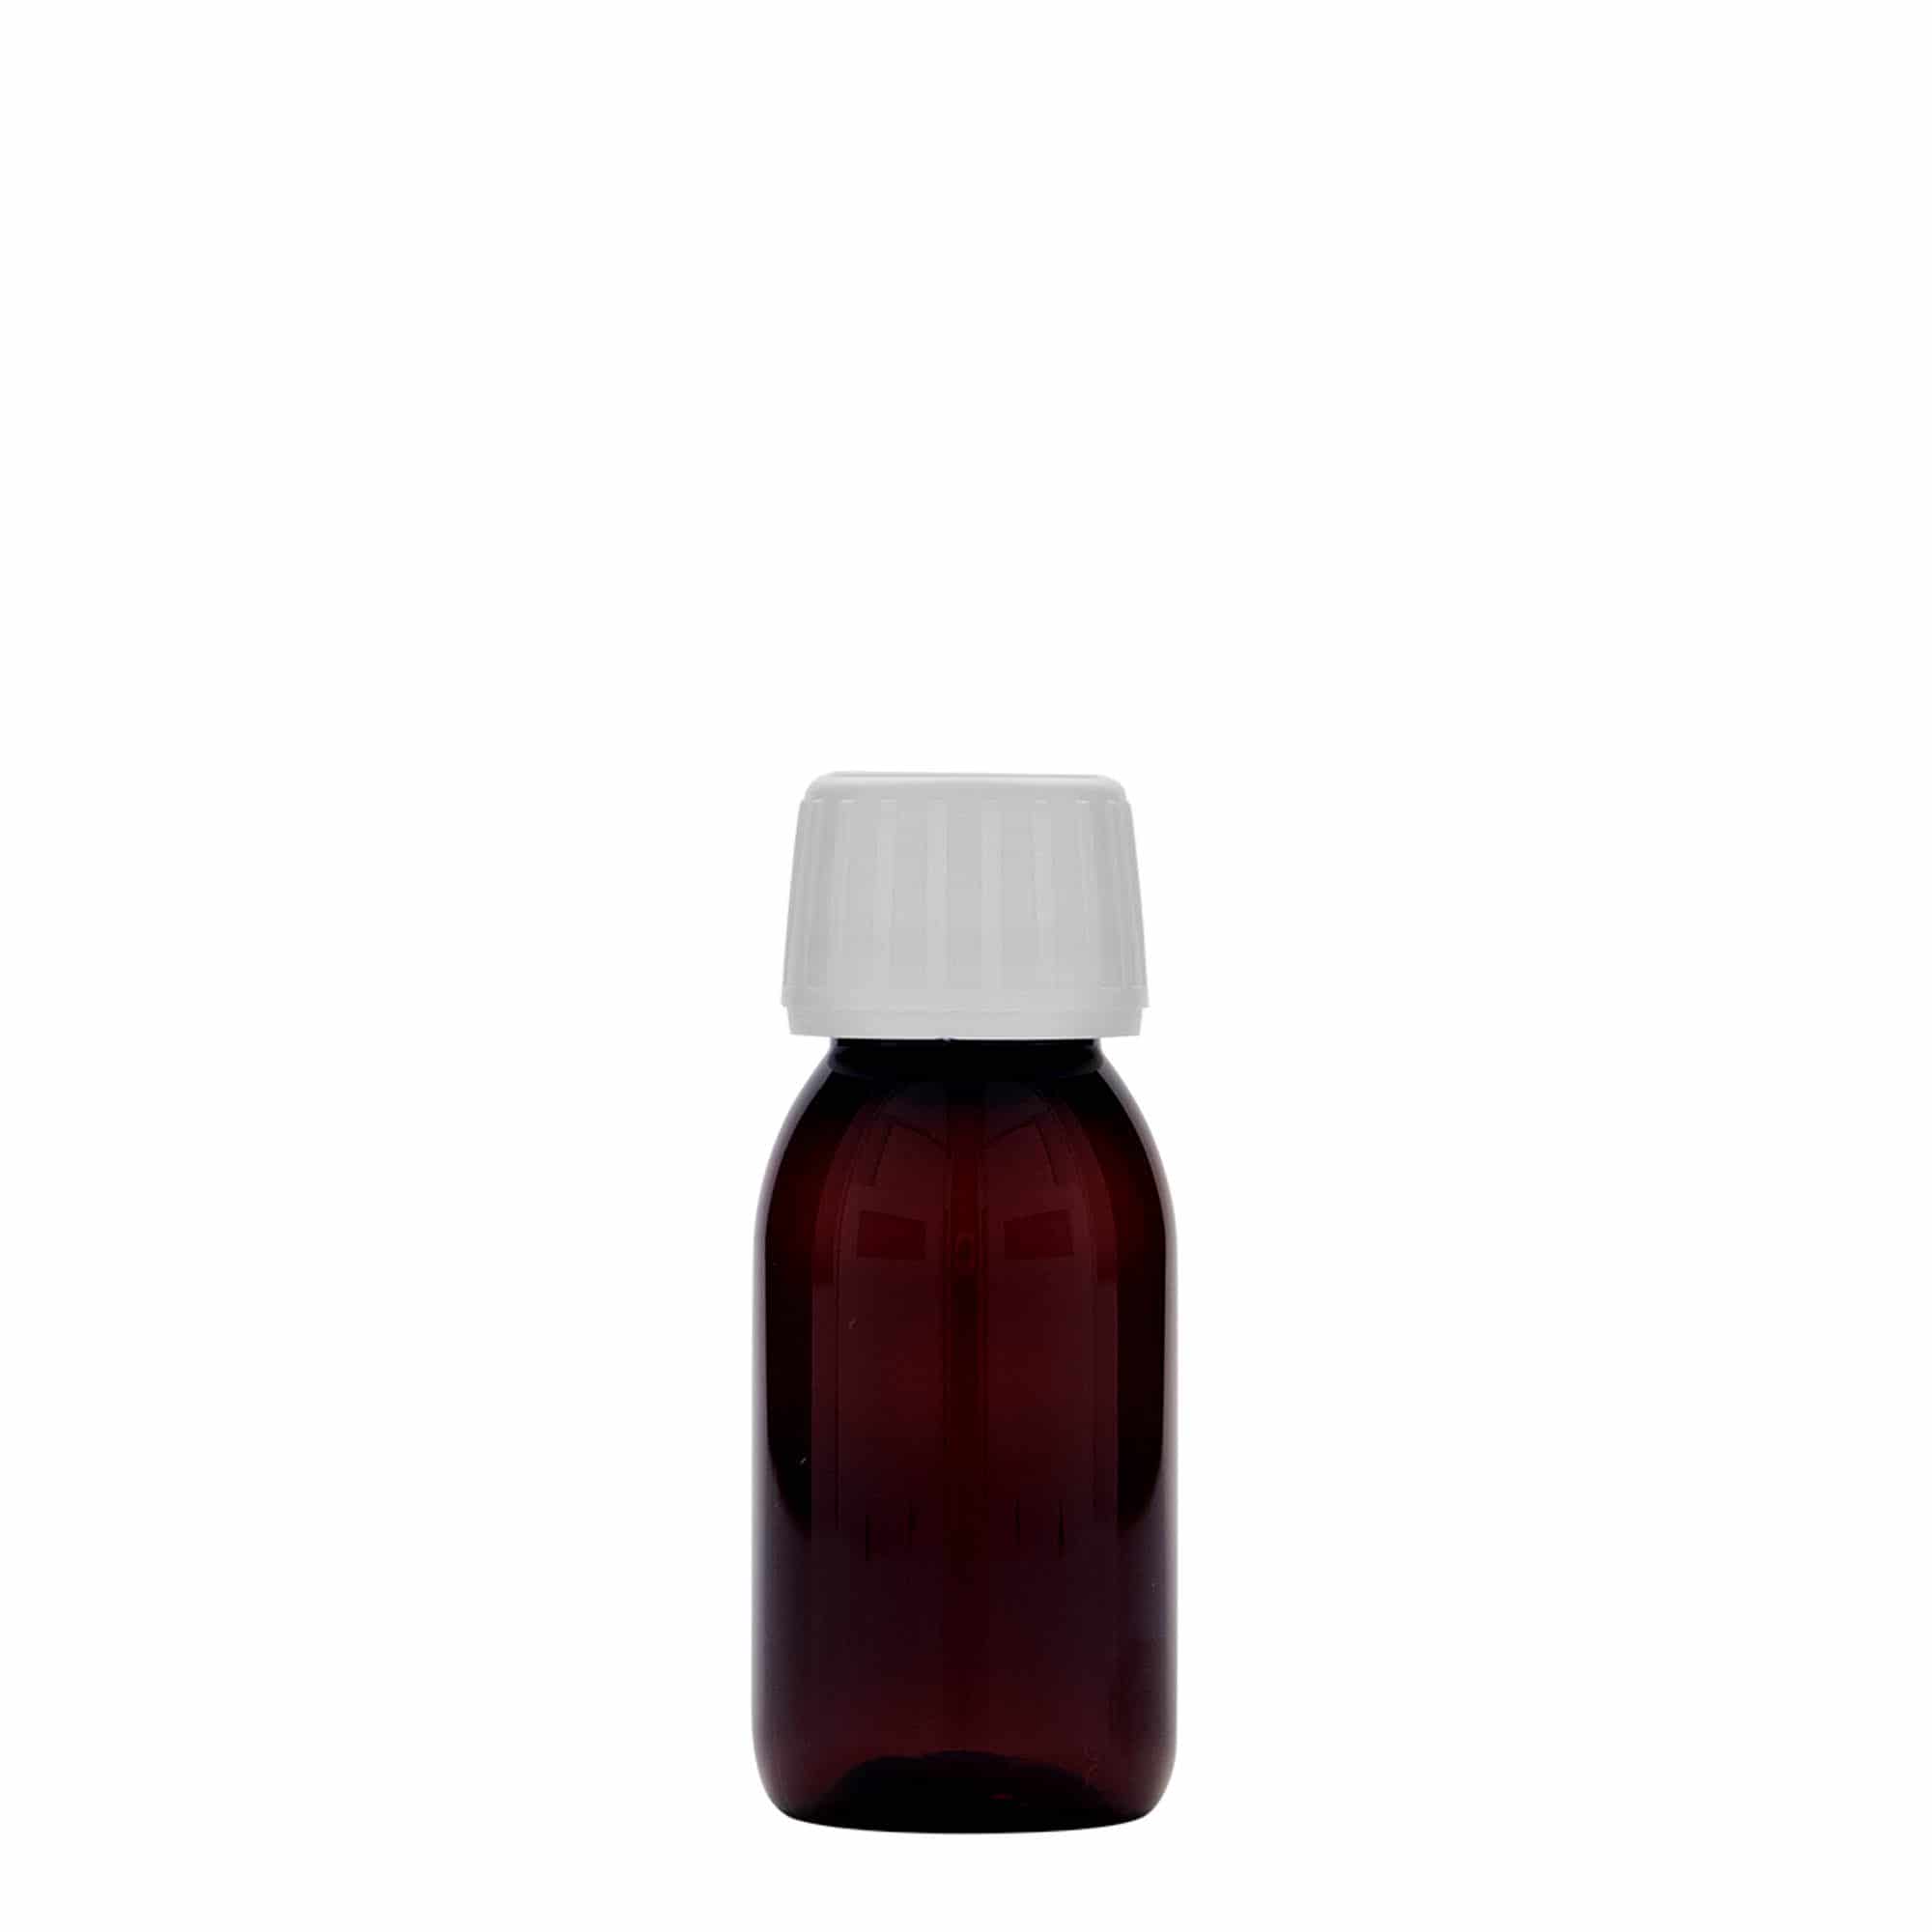 Flacon pharmaceutique en PET 60 ml, brun, plastique, bouchage: PP 28